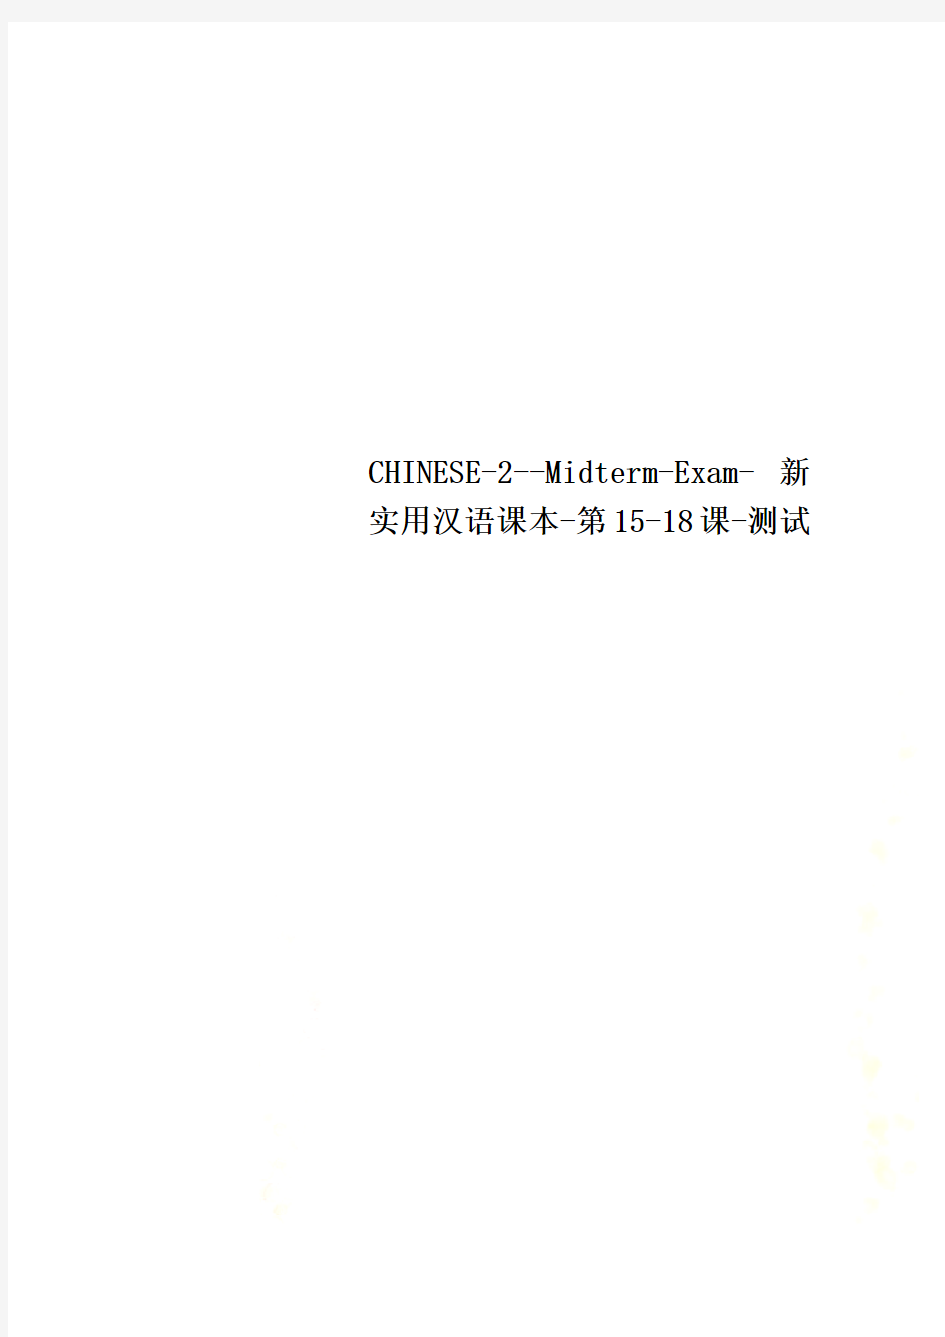 CHINESE-2--Midterm-Exam-新实用汉语课本-第15-18课-测试